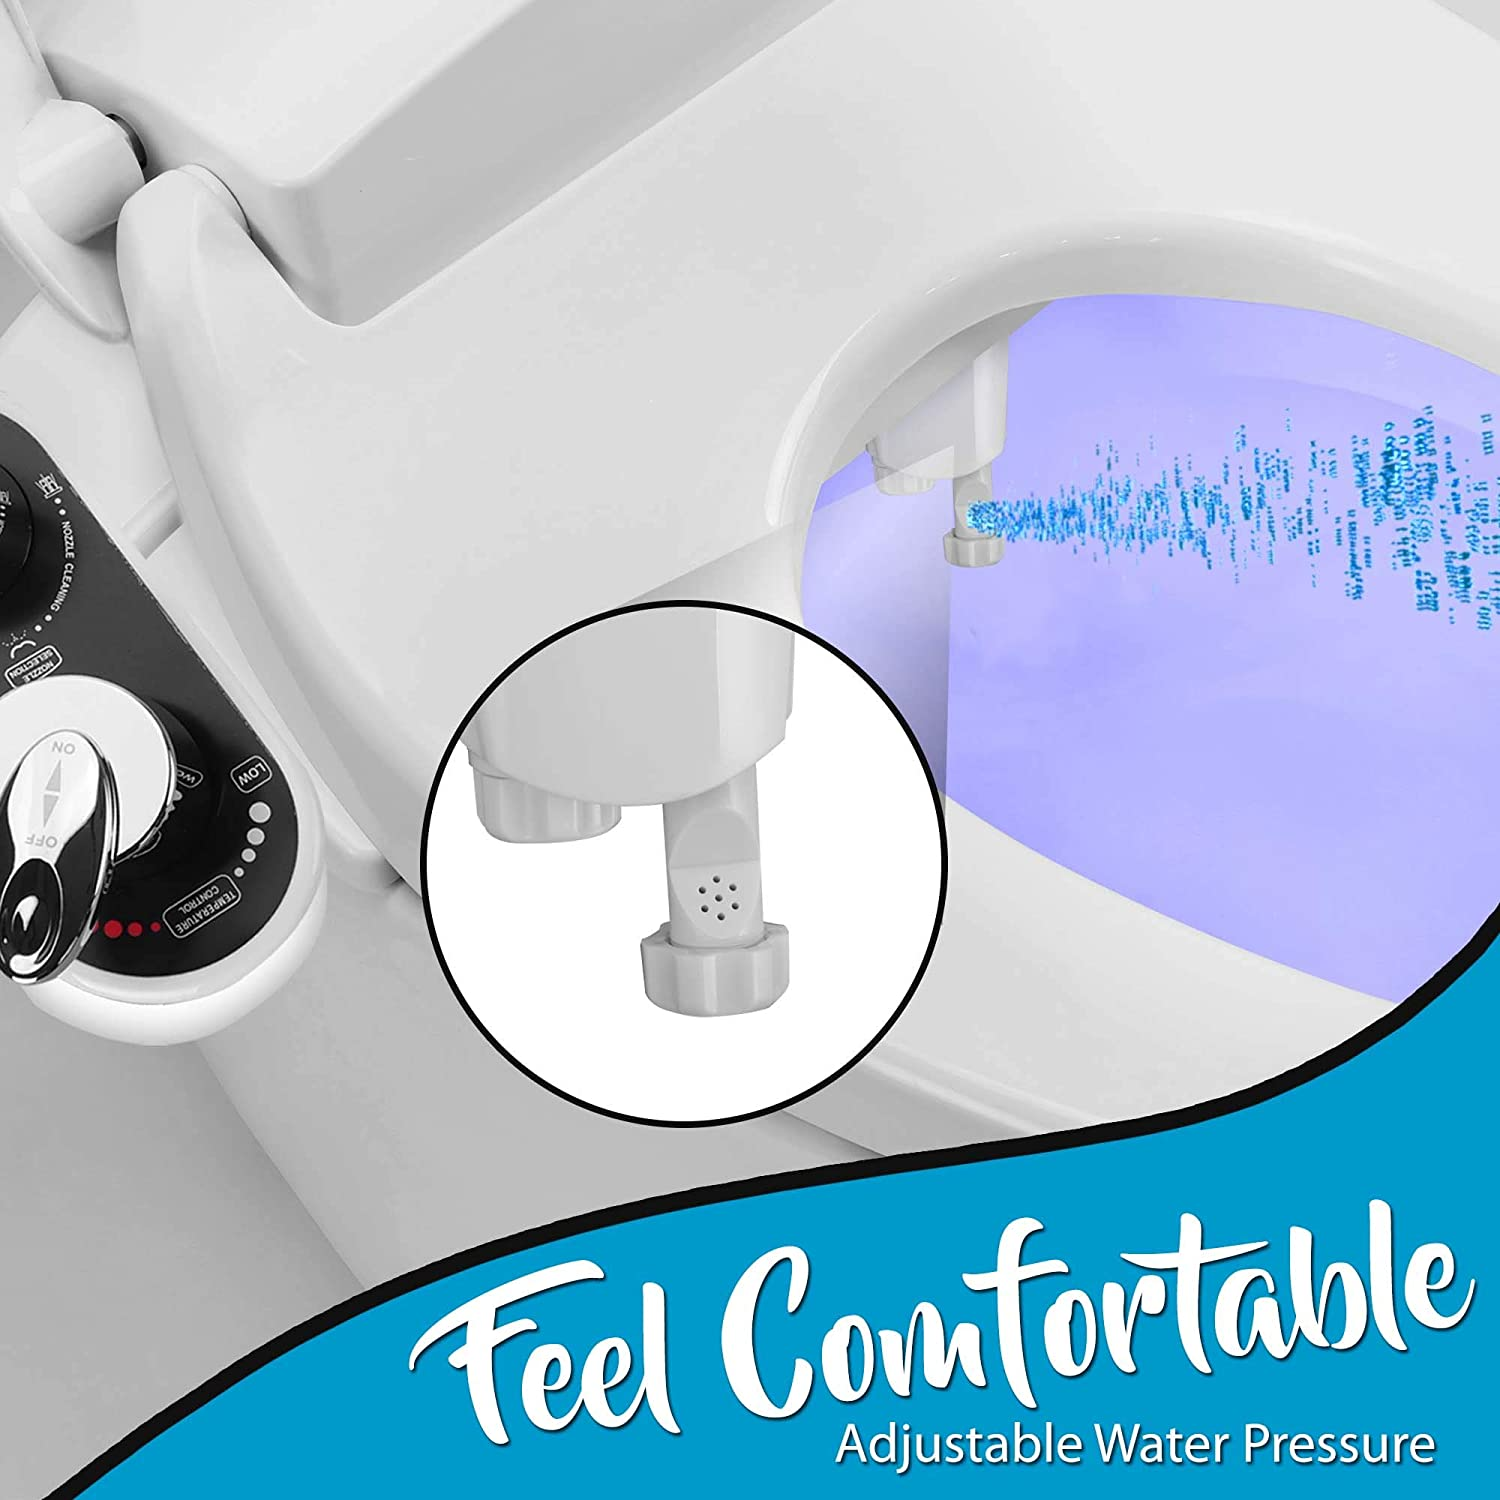 SereneLife Bathroom Bidet Attachment - Hot/Cold Water Toilet Seat Bidet Sprayer (SLTLSP14)